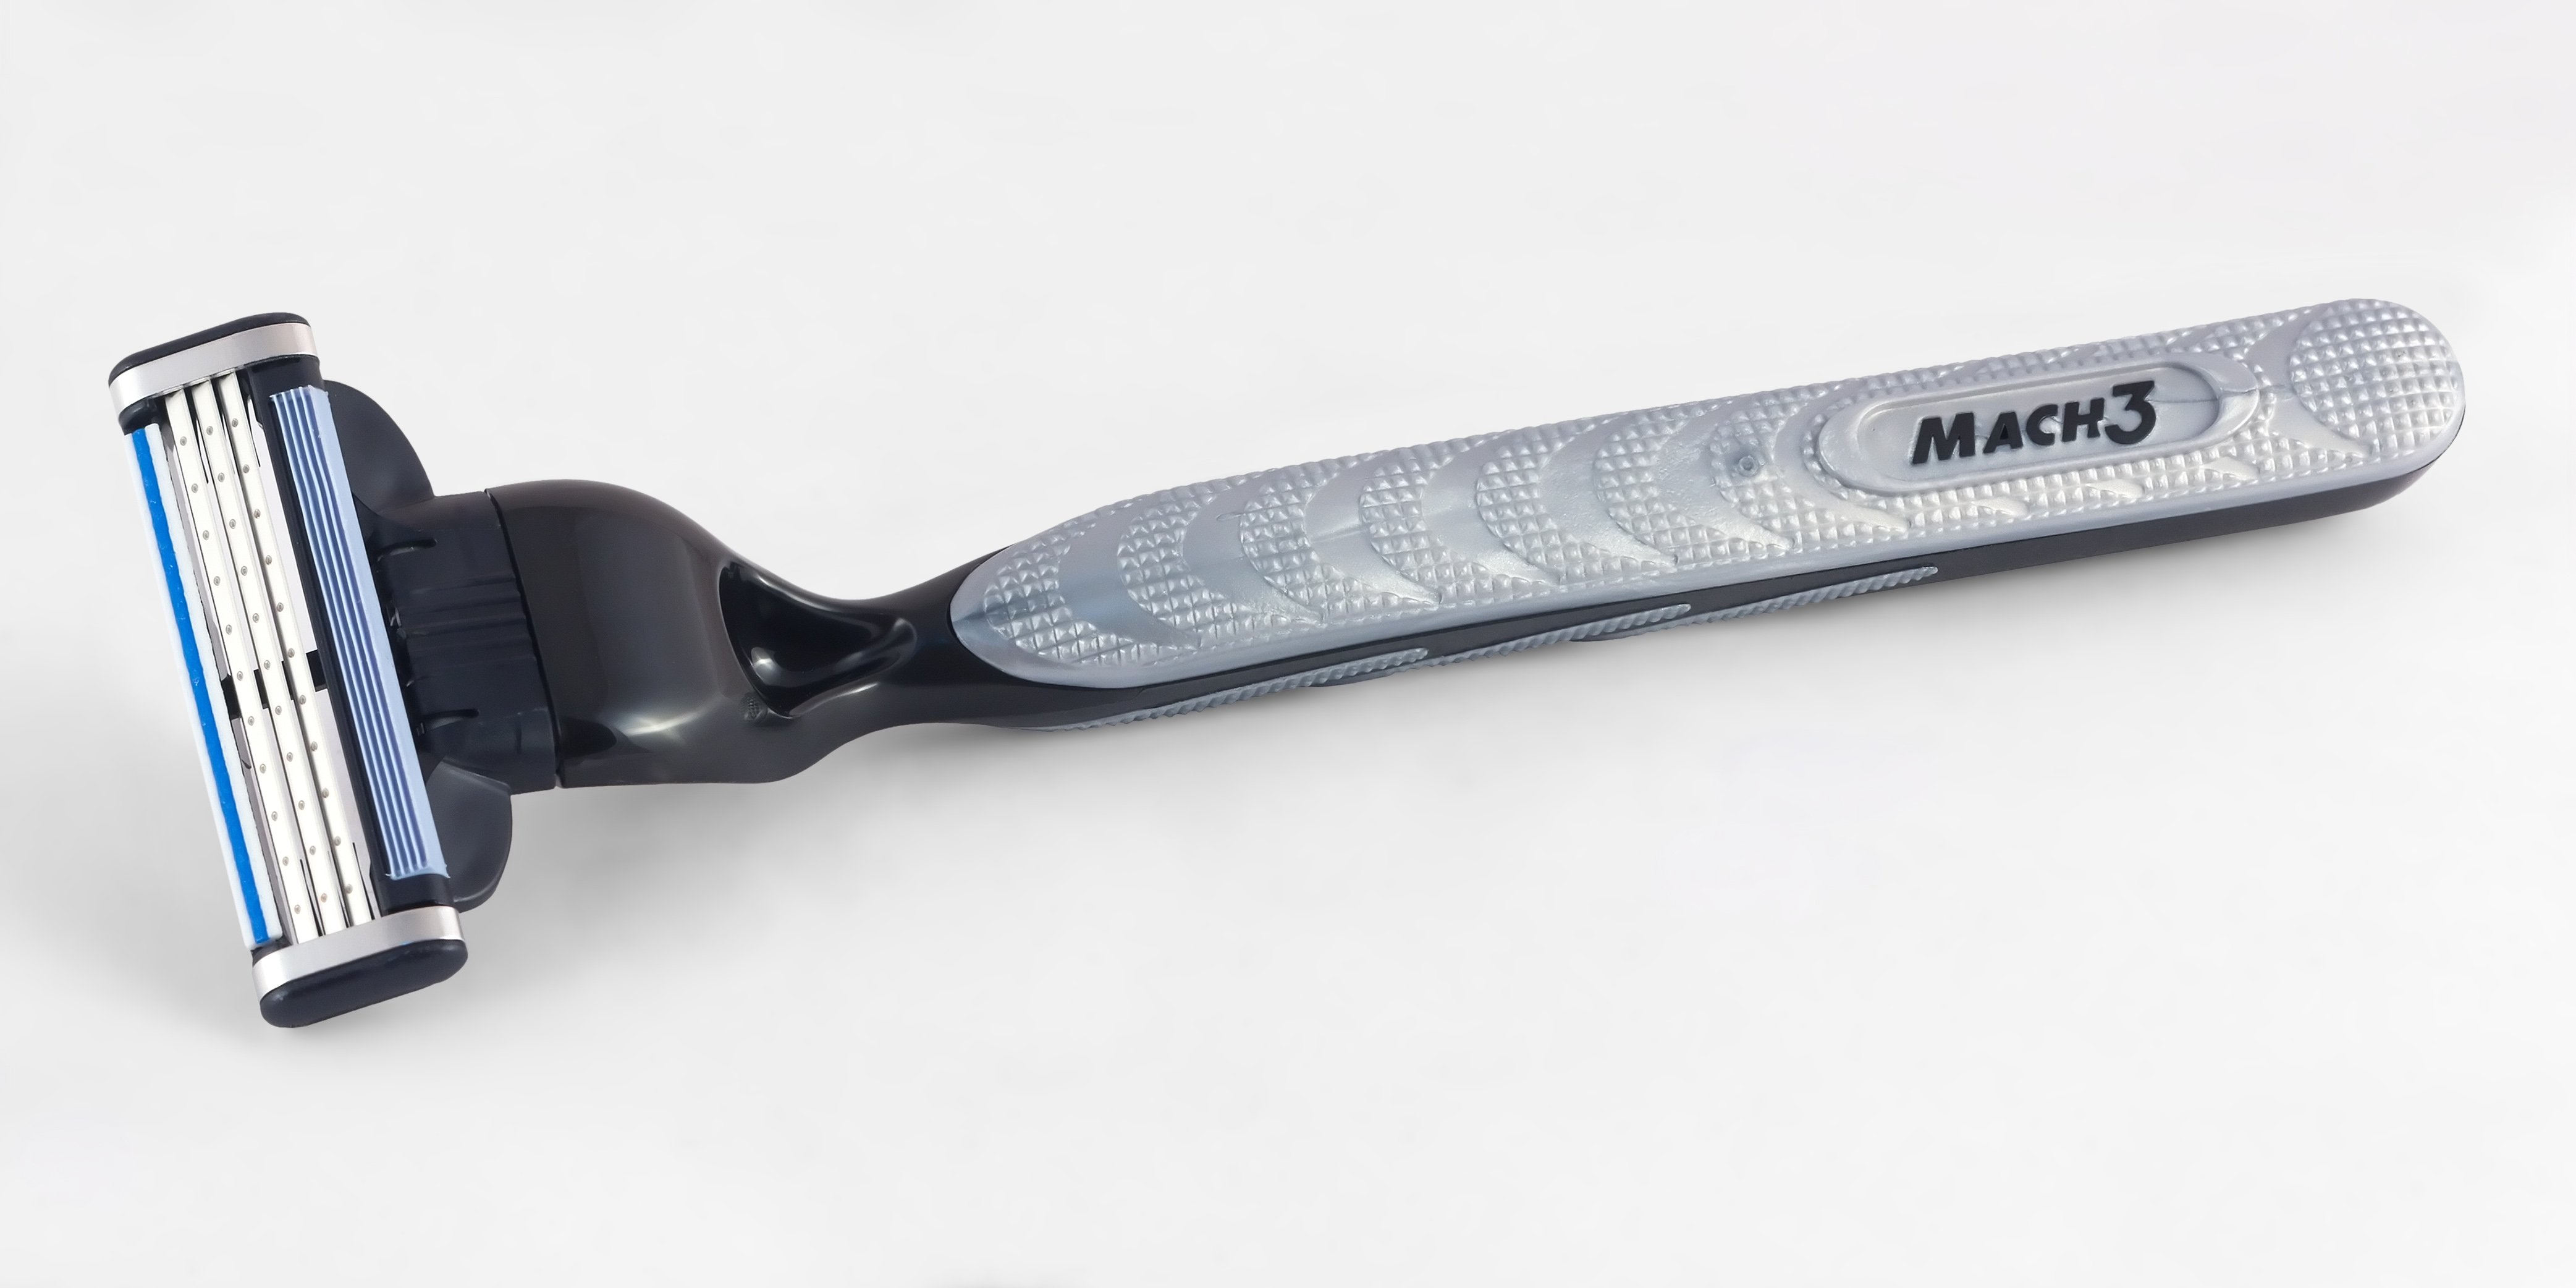 File:Gillette Mach3 razor from Indonesia, 2015